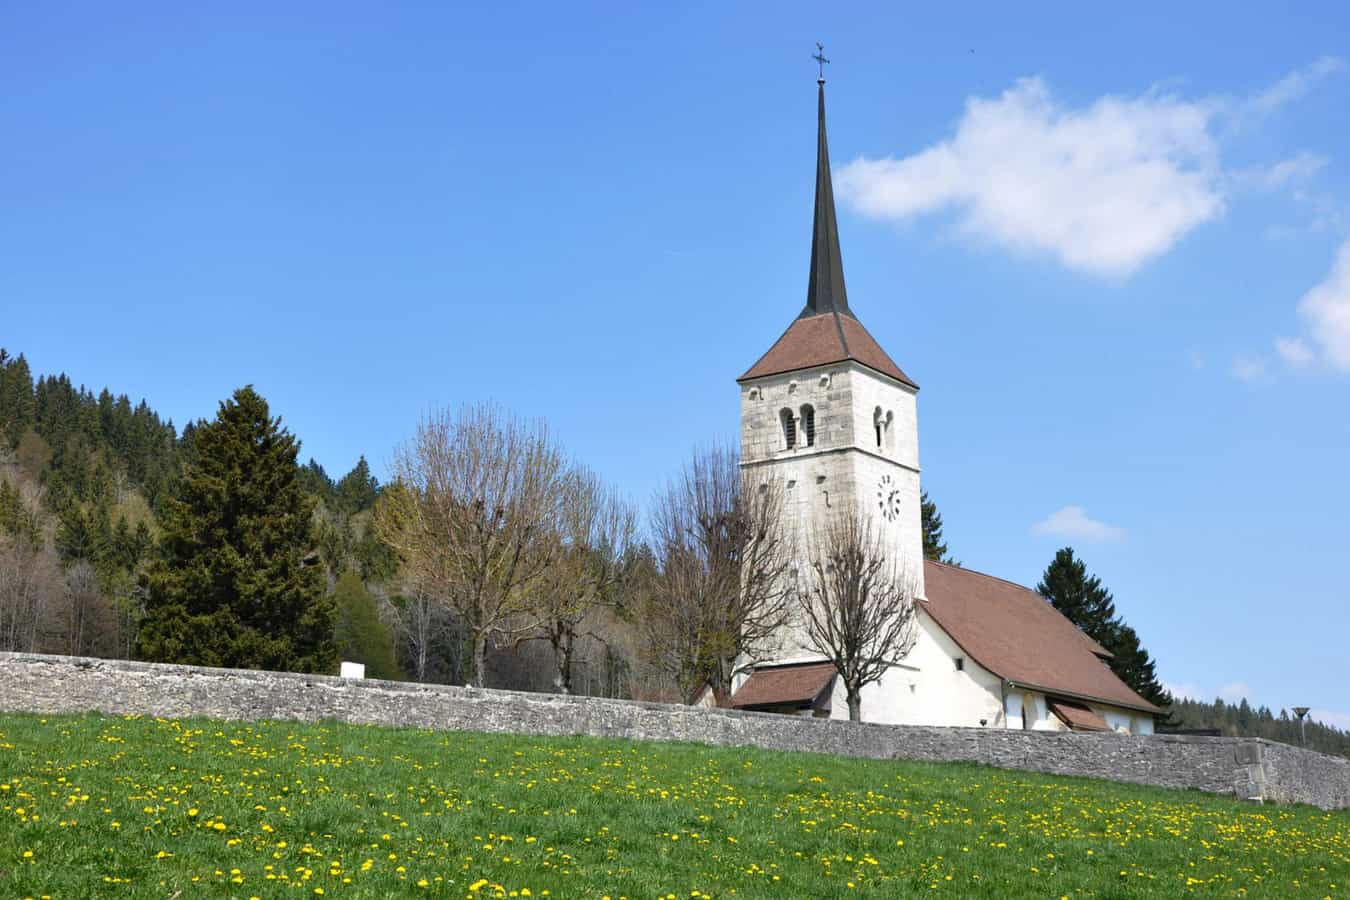 Reformierte Kirche des Dorfes La Sagne im Vallée de la Sagne (auch als Vallée des Ponts bezeichnet) des Neuenburger Juras.